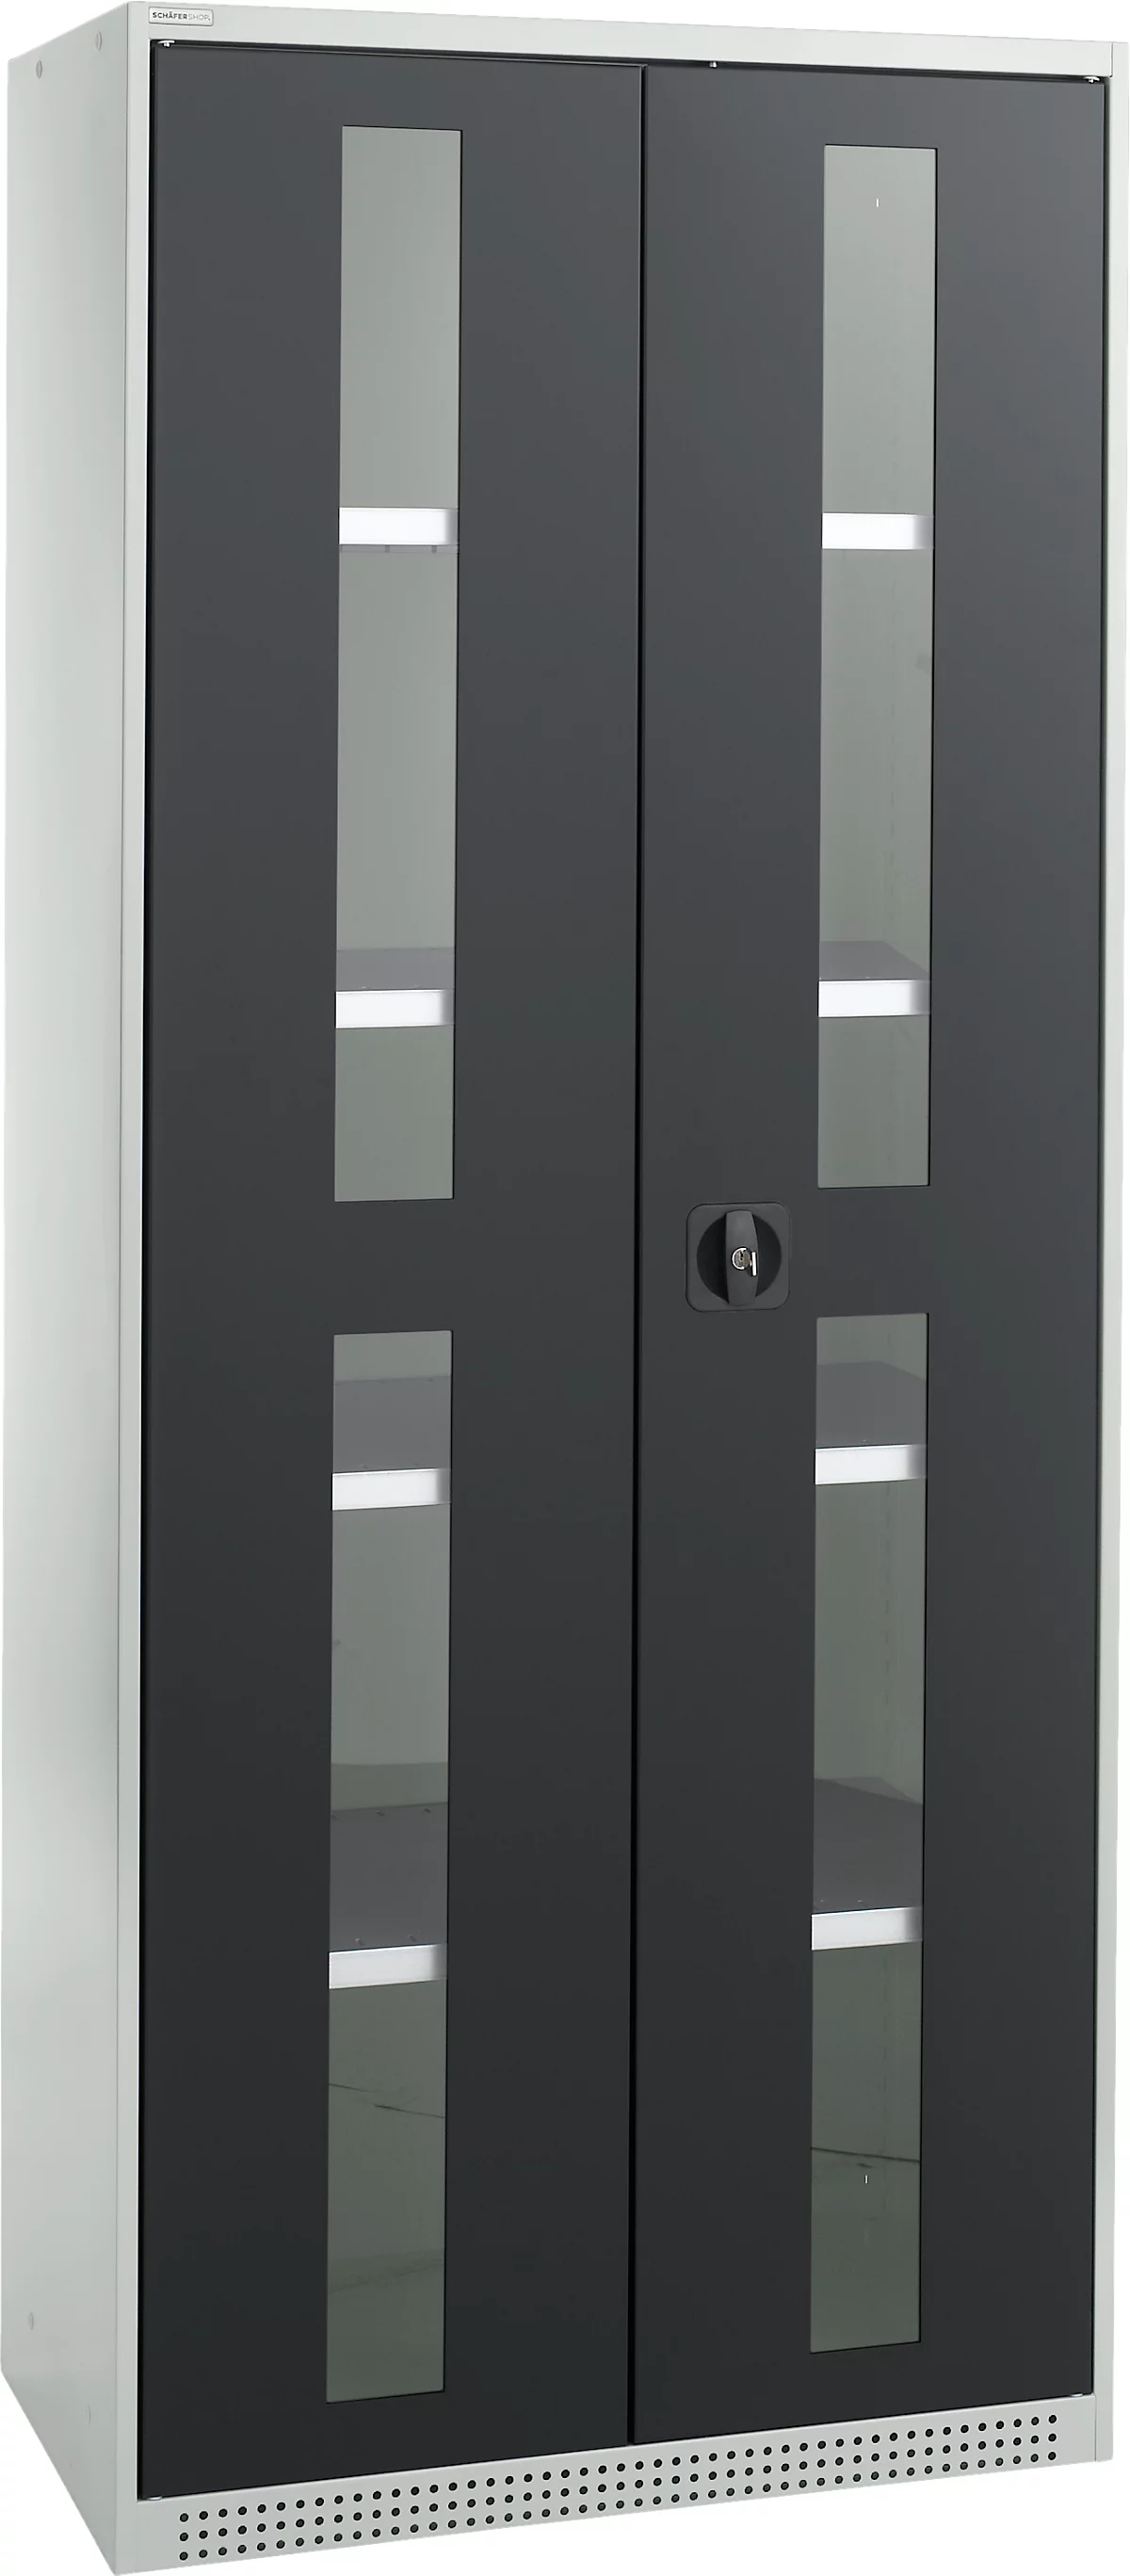 Schäfer Shop Genius armario de dos puertas FS, acero, mirilla, agujeros de ventilación, An 810 x Pr 520 x Al 1950 mm, 5 OH, gris claro/gris antracita, hasta 300 kg 